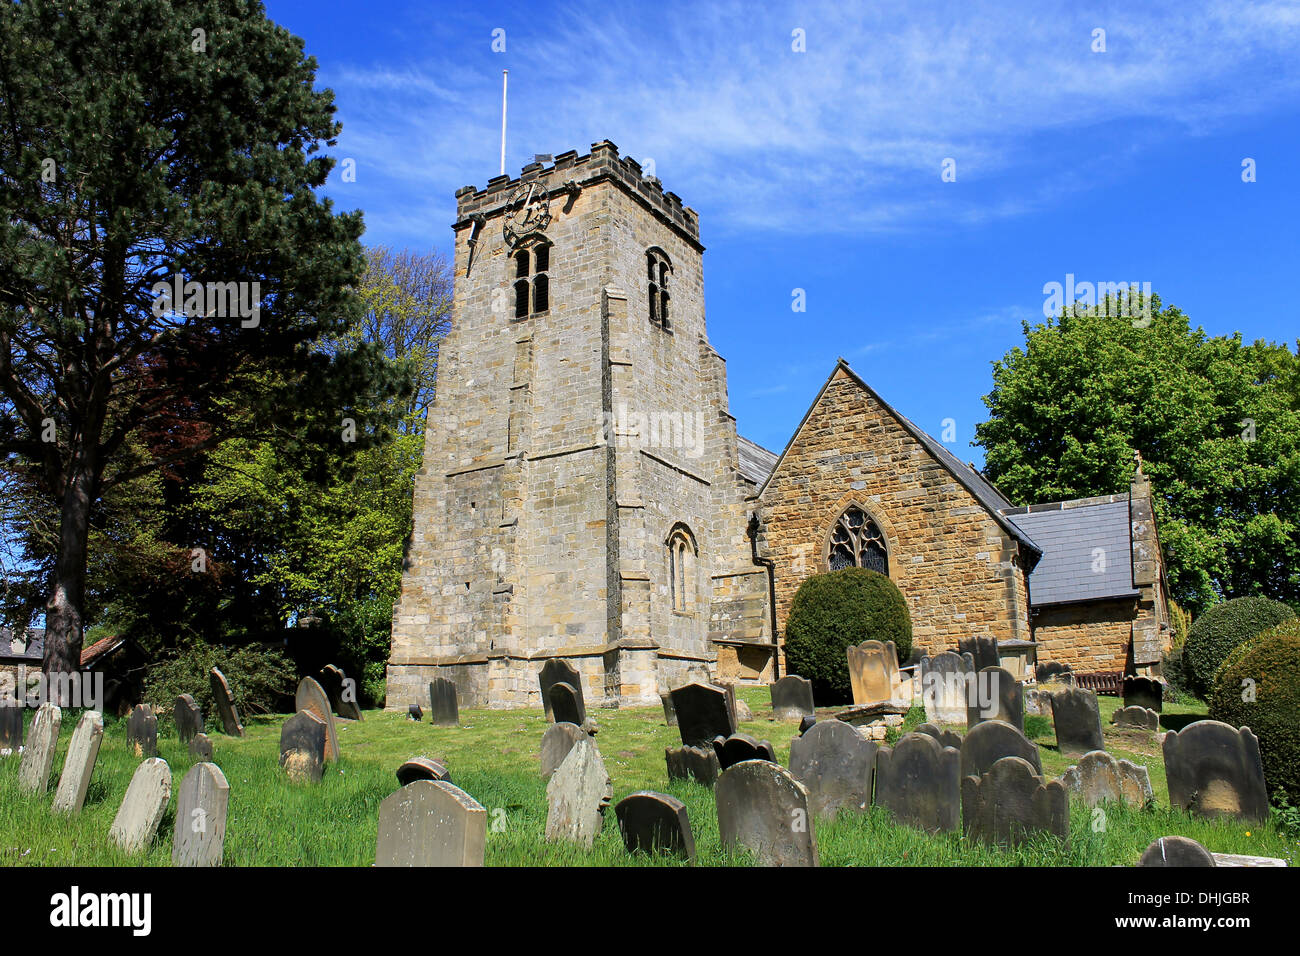 Vista panoramica del vecchio villaggio chiesa con cimitero in primo piano, Inghilterra. Foto Stock